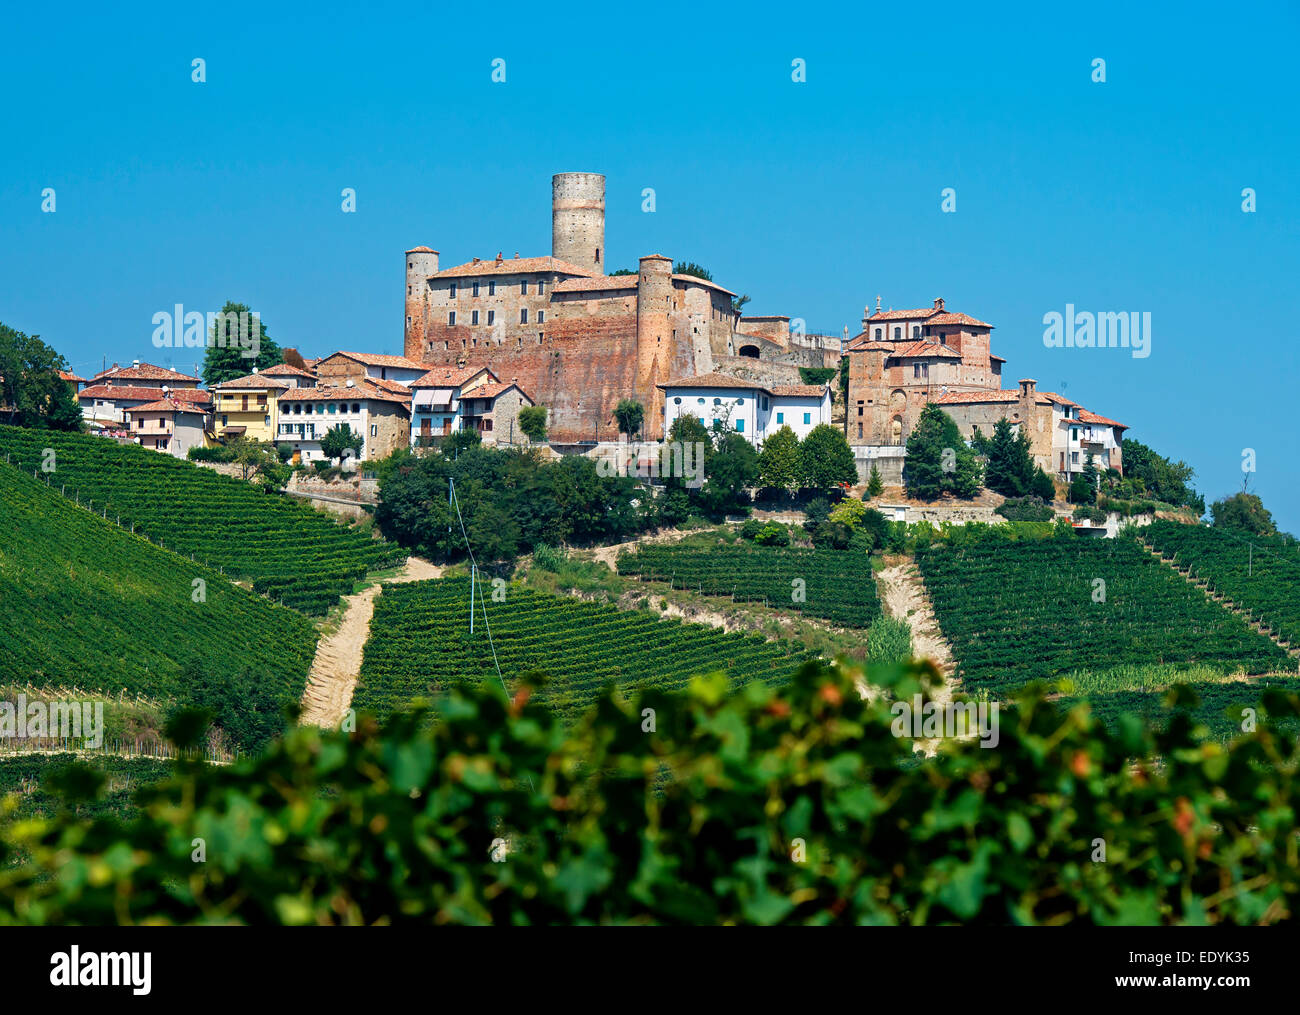 The castle of Castiglione Falletto, vineyards, Castiglione Falletto, Cuneo province, Piedmont, Italy Stock Photo